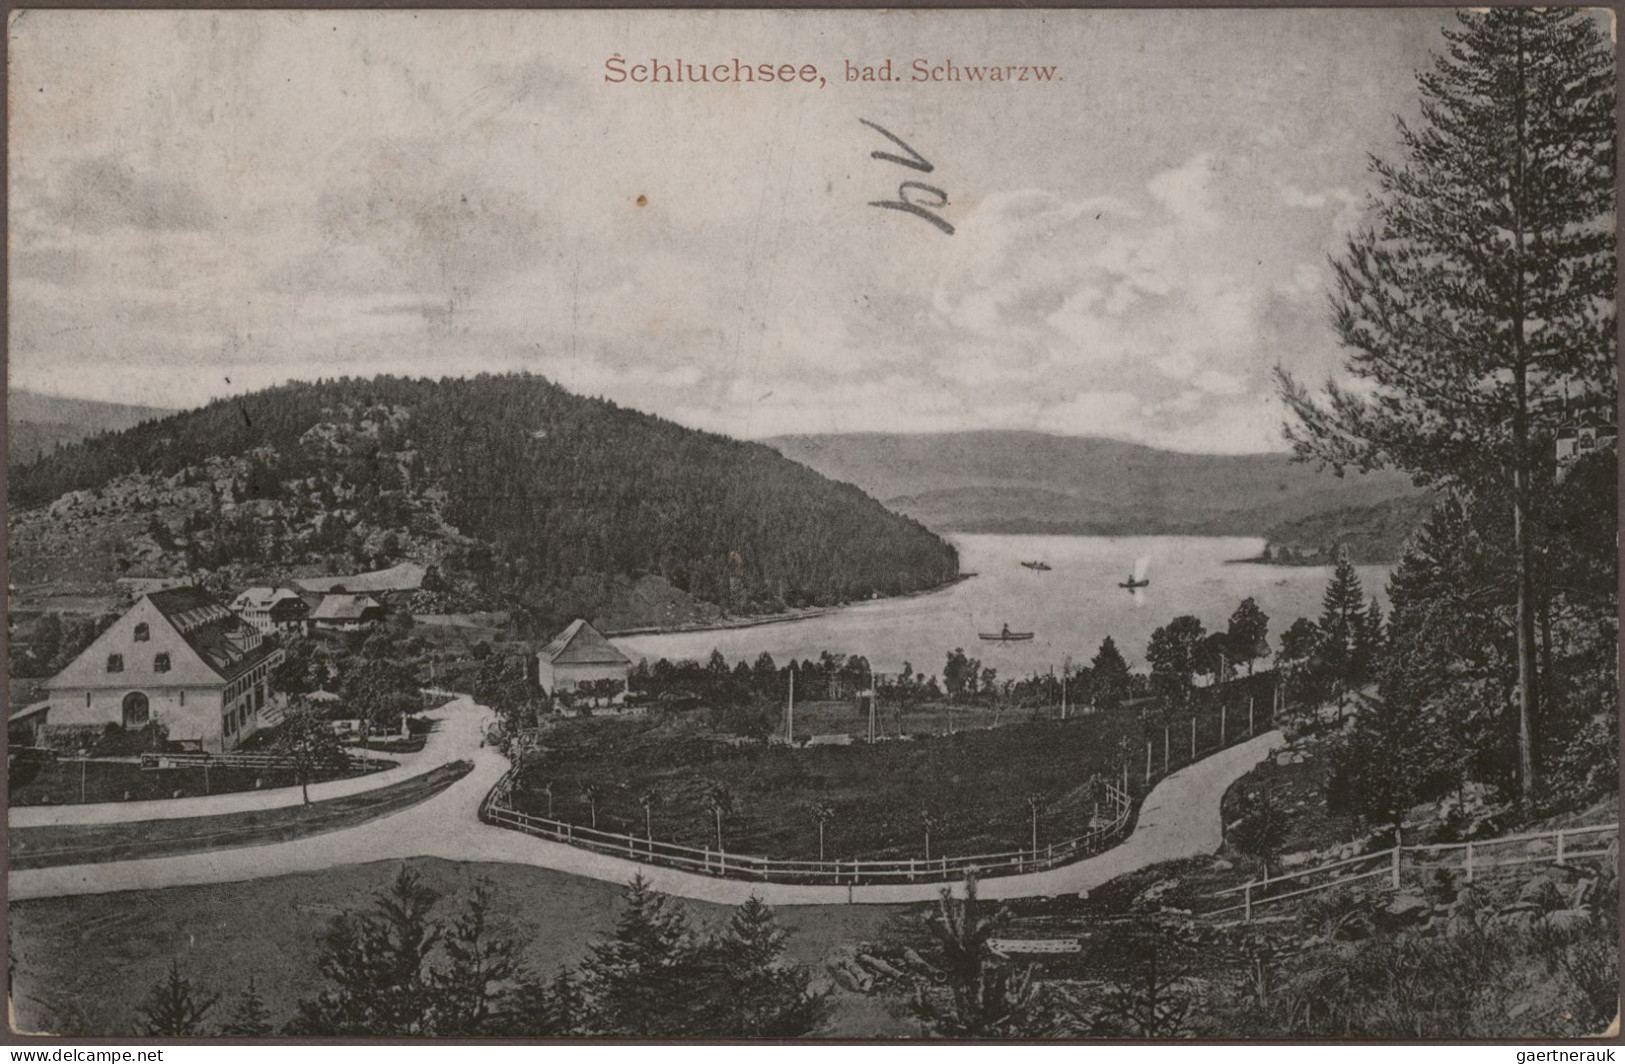 Ansichtskarten: 1890/1930, Topographie Deutschland, Partie mit rund 280 Karten m